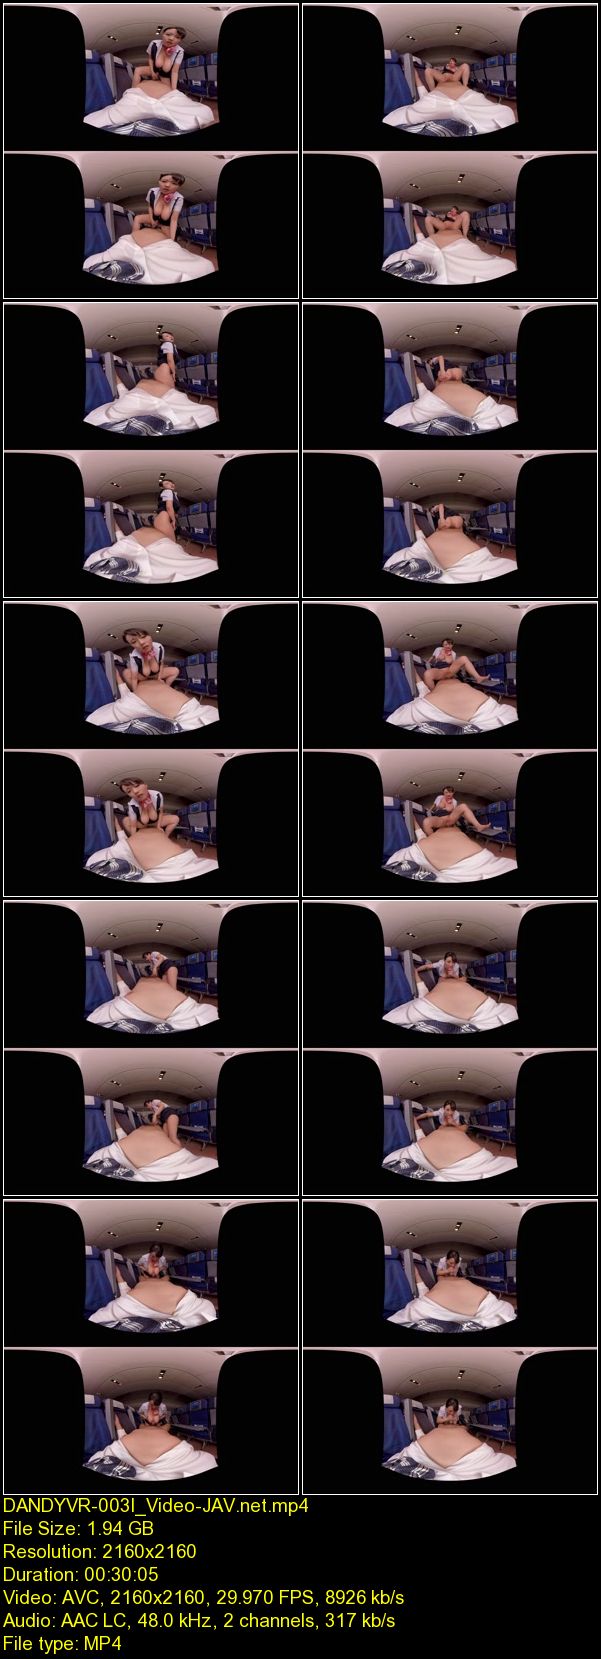 JAV Download [DANDYVR 003] 【VR AV】長尺シチュエーション 「『大きな胸でゴメンナサイ』高嶺の花の巨乳CAが手コキ/フェラ/パイズリ/SEXを機内でこっそりヤってくれた」 2017 10 06